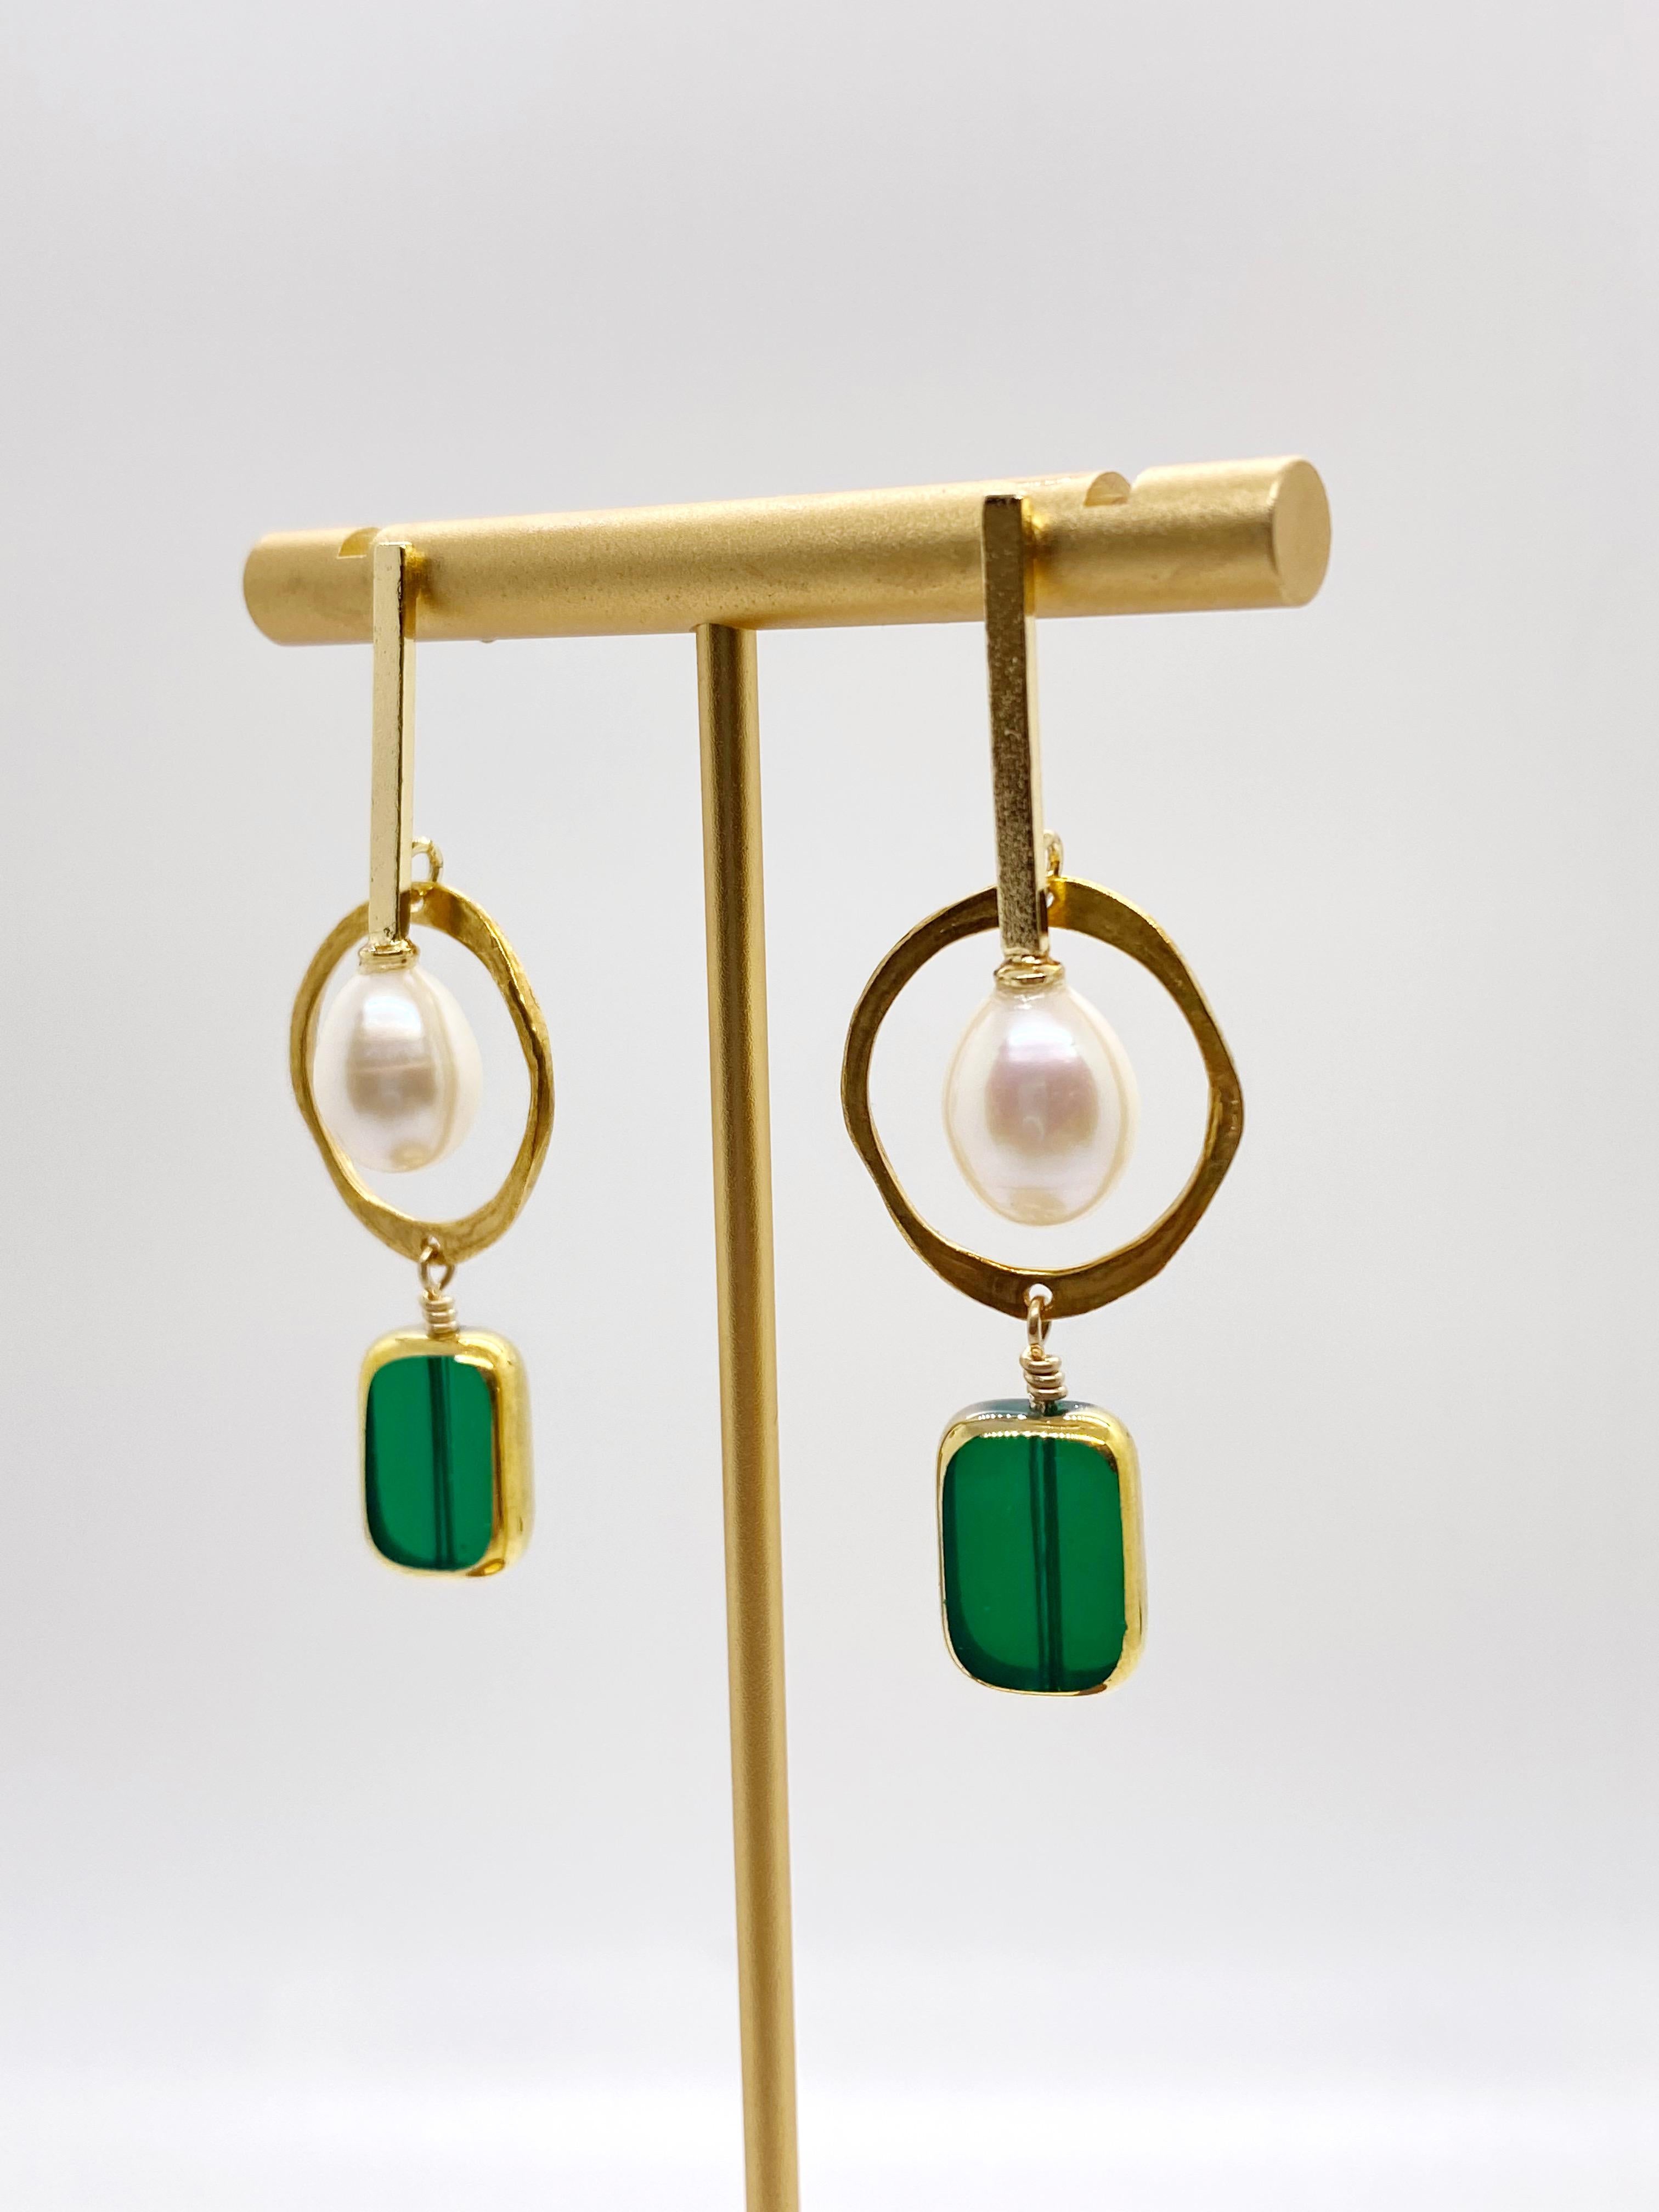 Uncut Pearl with Emerald Glass Vintage German Earrings